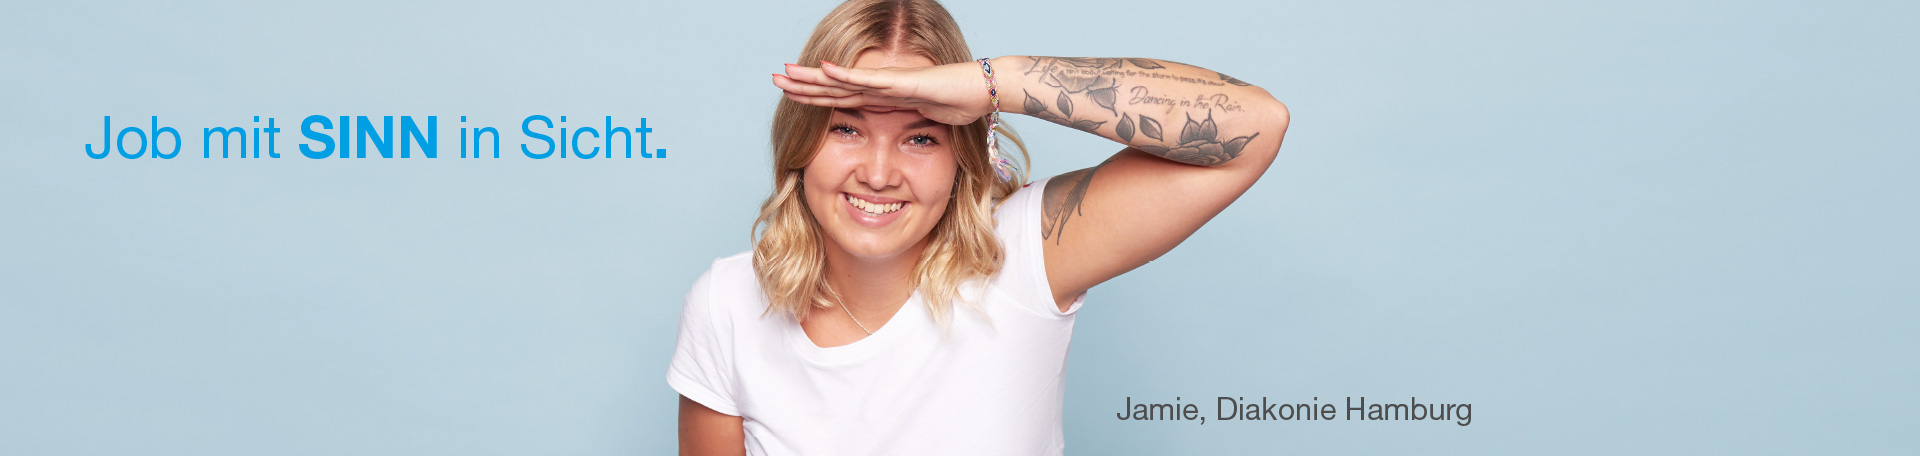 Job mit Sinn in Sicht - Frau mit Tattoo hält Hand vor die Stirn und blickt nach vorne